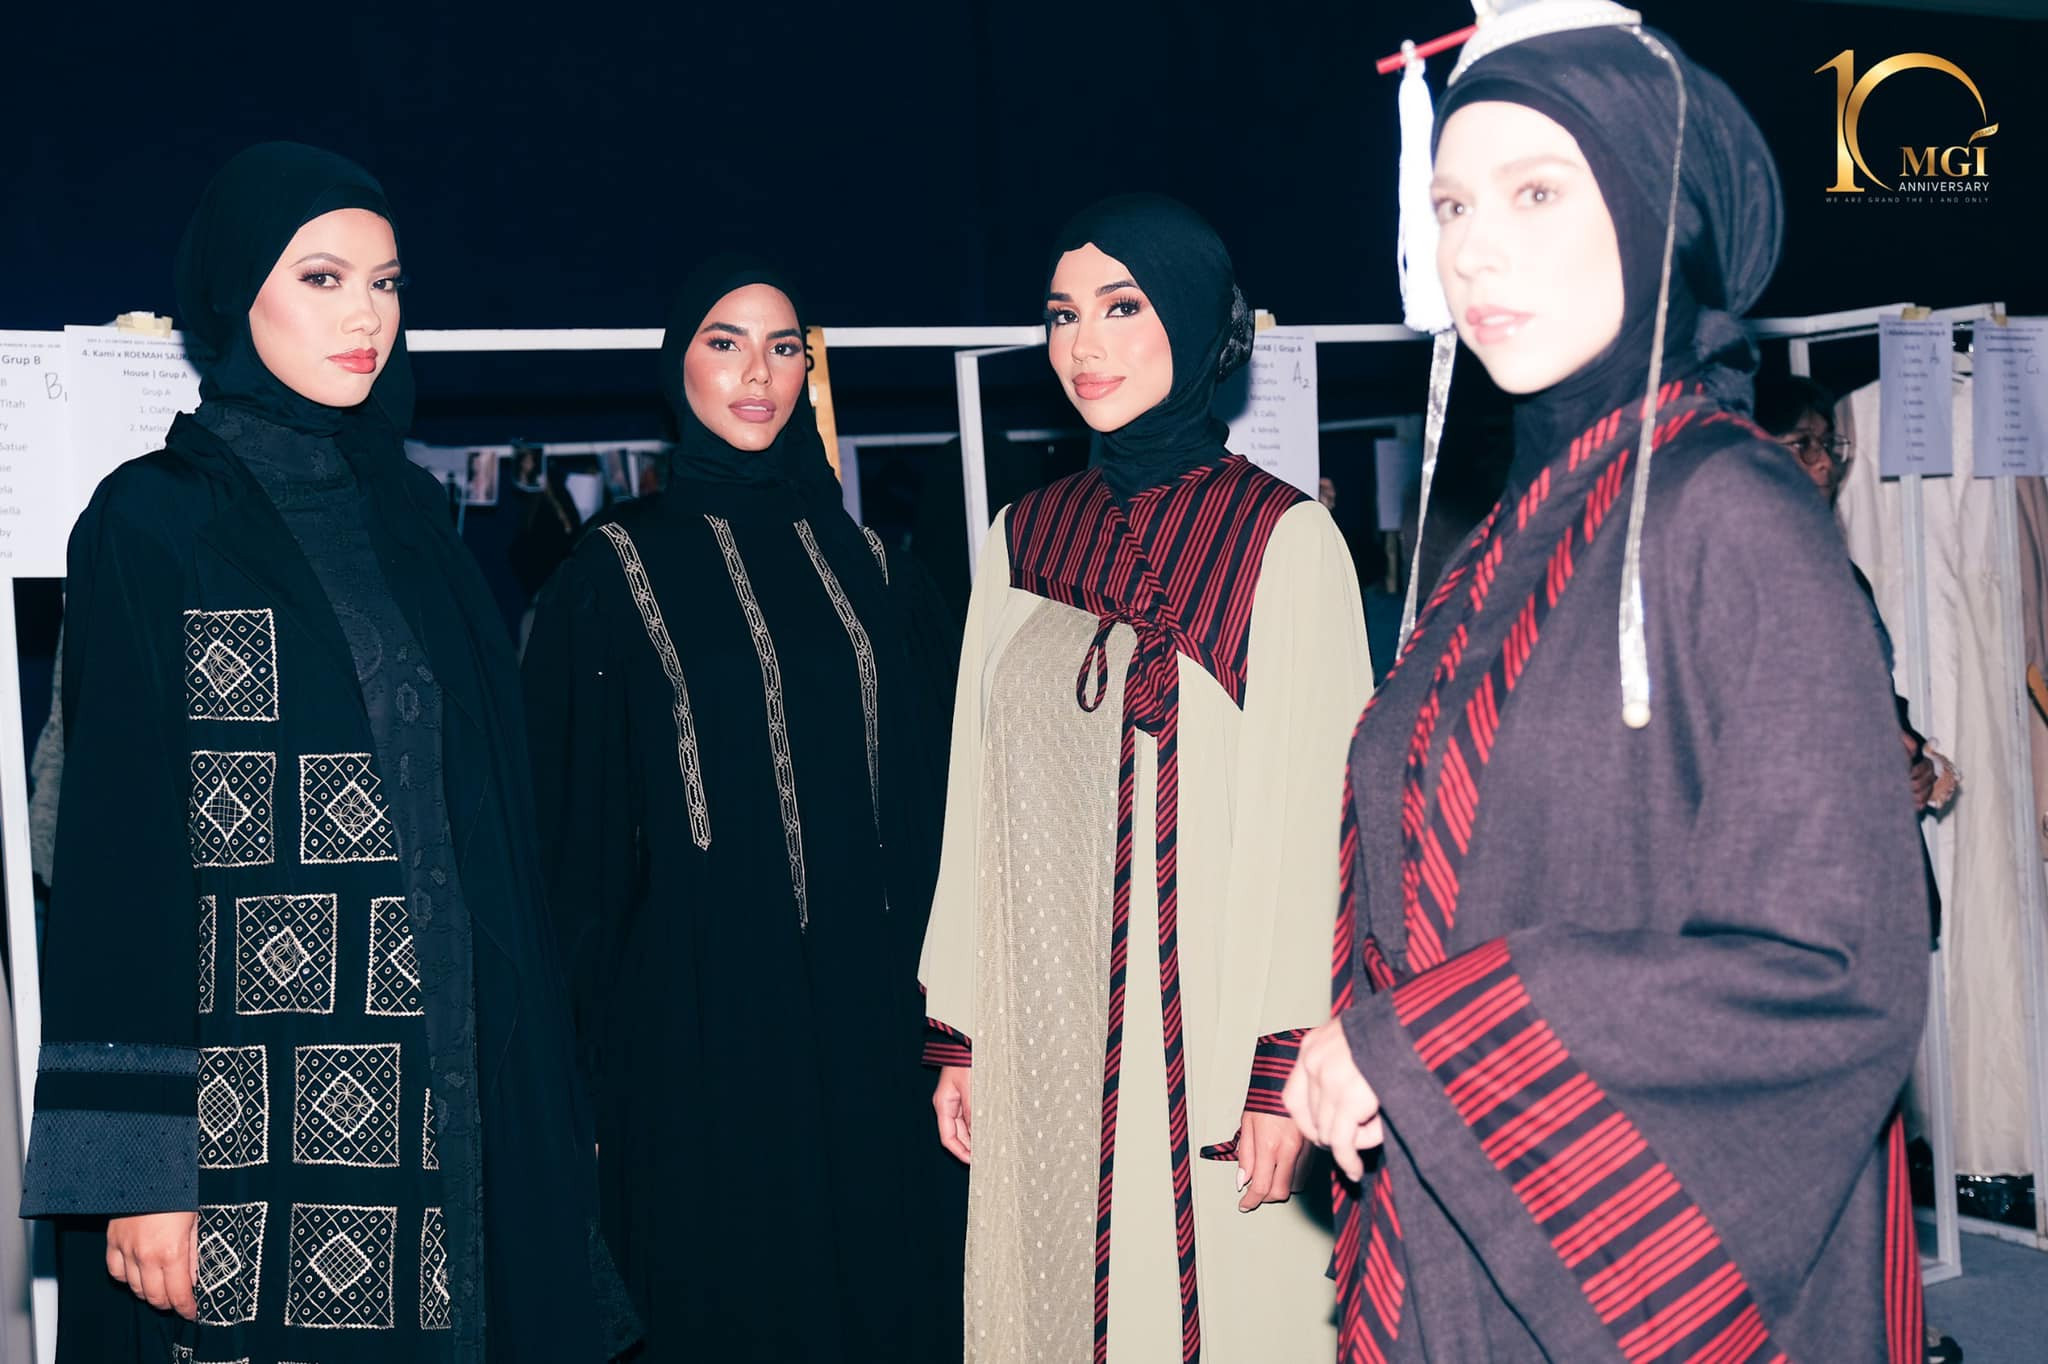 candidatas a miss grand international 2022 durante muslim fashion week. DHwgj4